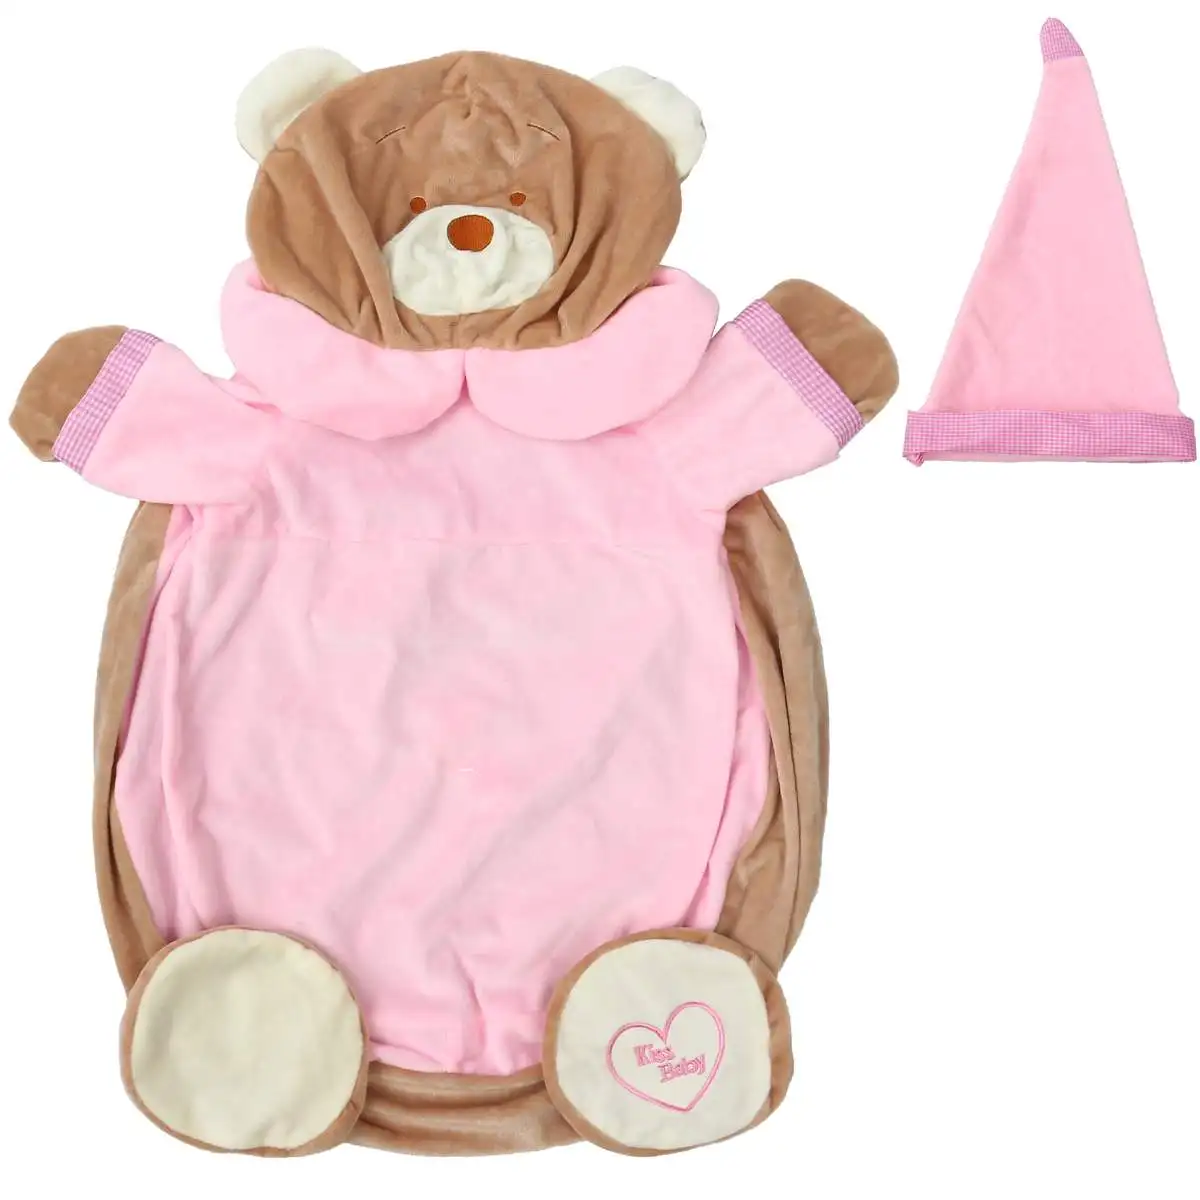 Детская одежда с рисунком из мультфильма сиденья мягкая плюшевая игрушка мягкая игрушка; медведь Животные комфортная одежда ребенок